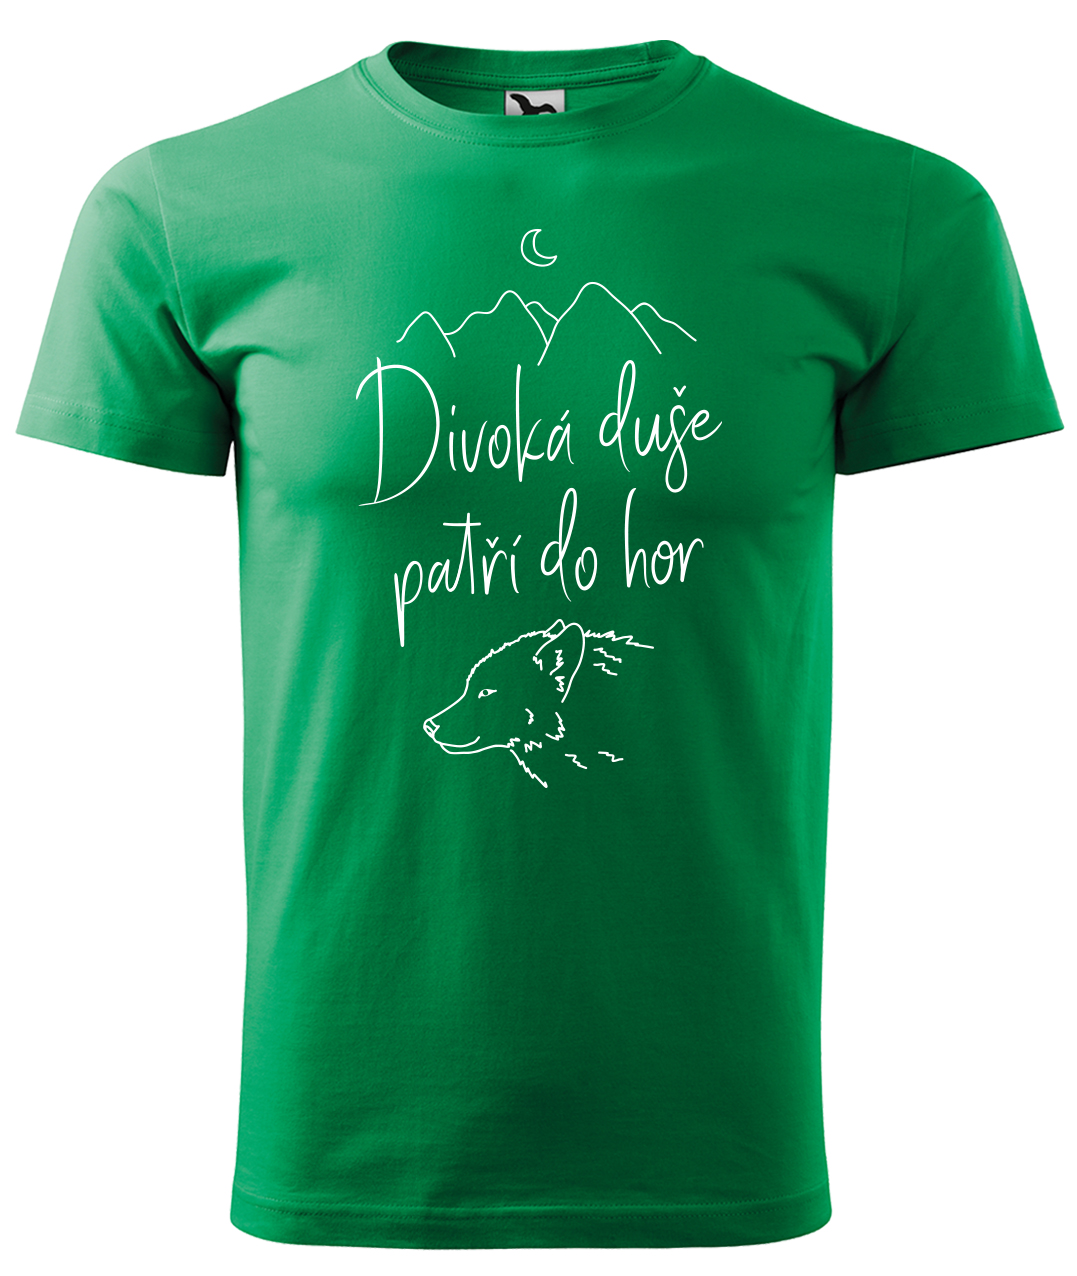 Dětské tričko na hory - Divoká duše patří do hor Velikost: 8 let / 134 cm, Barva: Středně zelená (16), Délka rukávu: Krátký rukáv